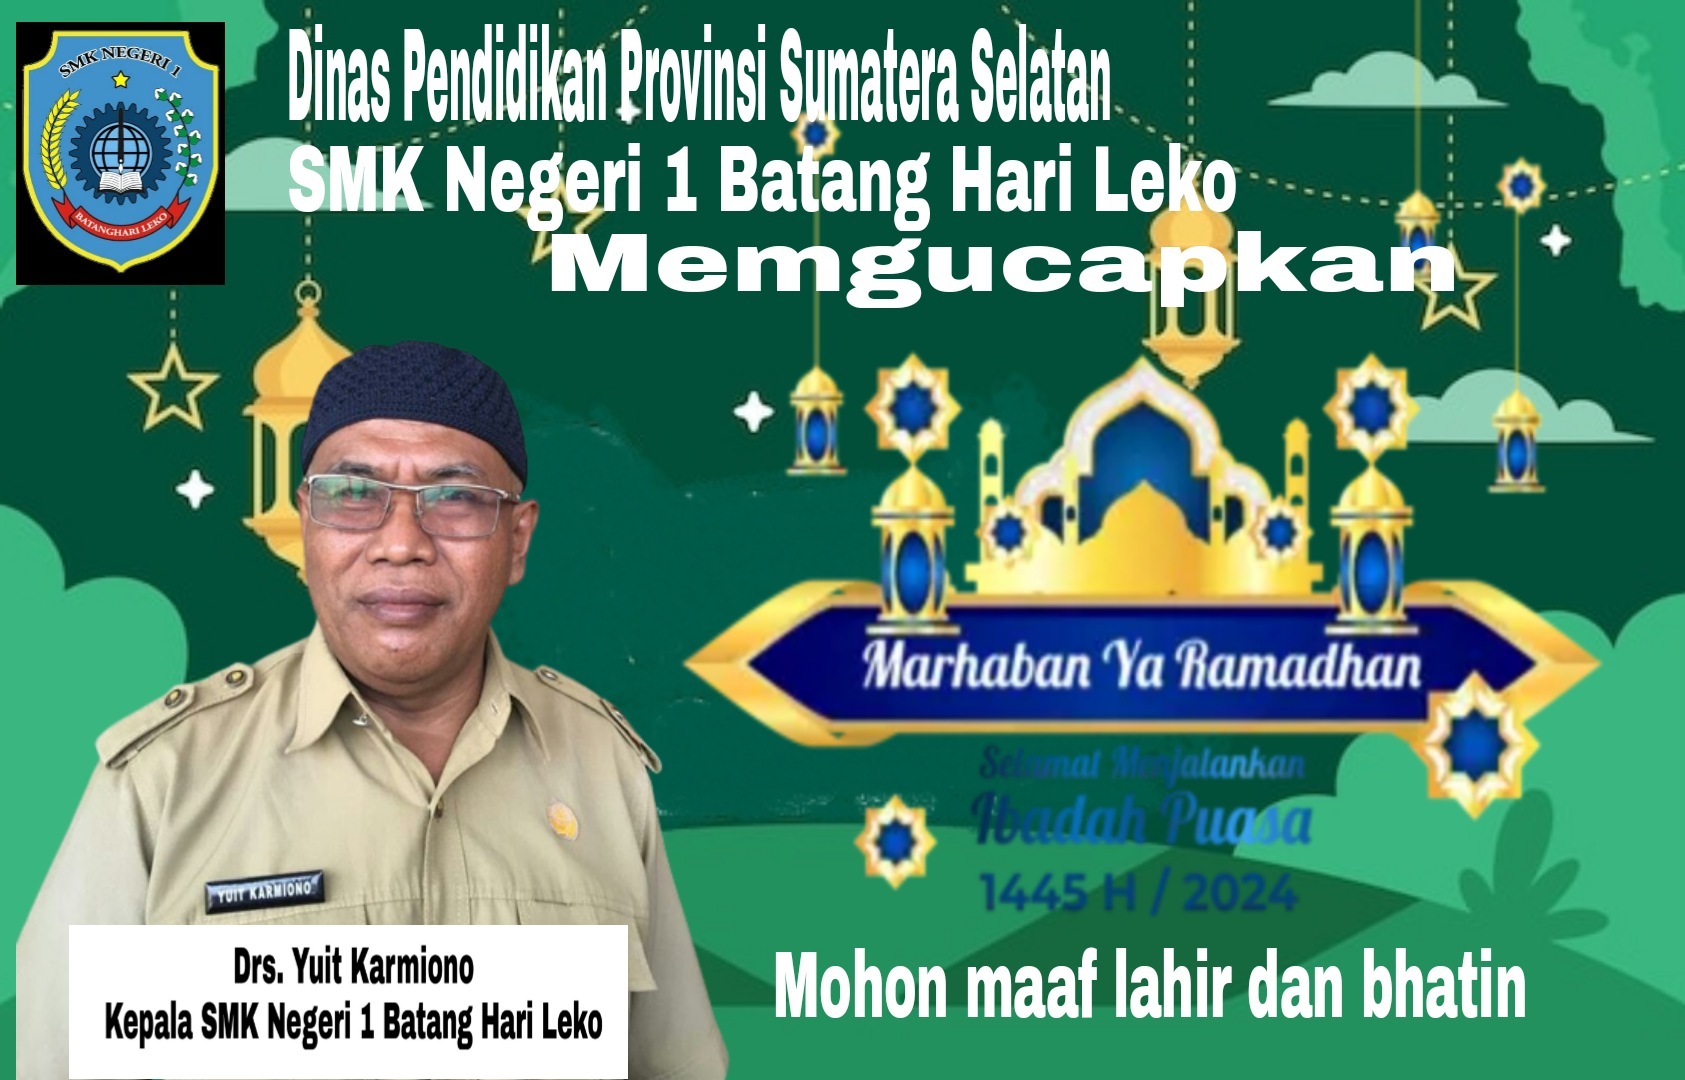 Dinas Pendidikan Provinsi Sumatera Selatan, SMK Negeri Batanghari Leko Mengucapkan selamat menjalankan Ibadah Puasa